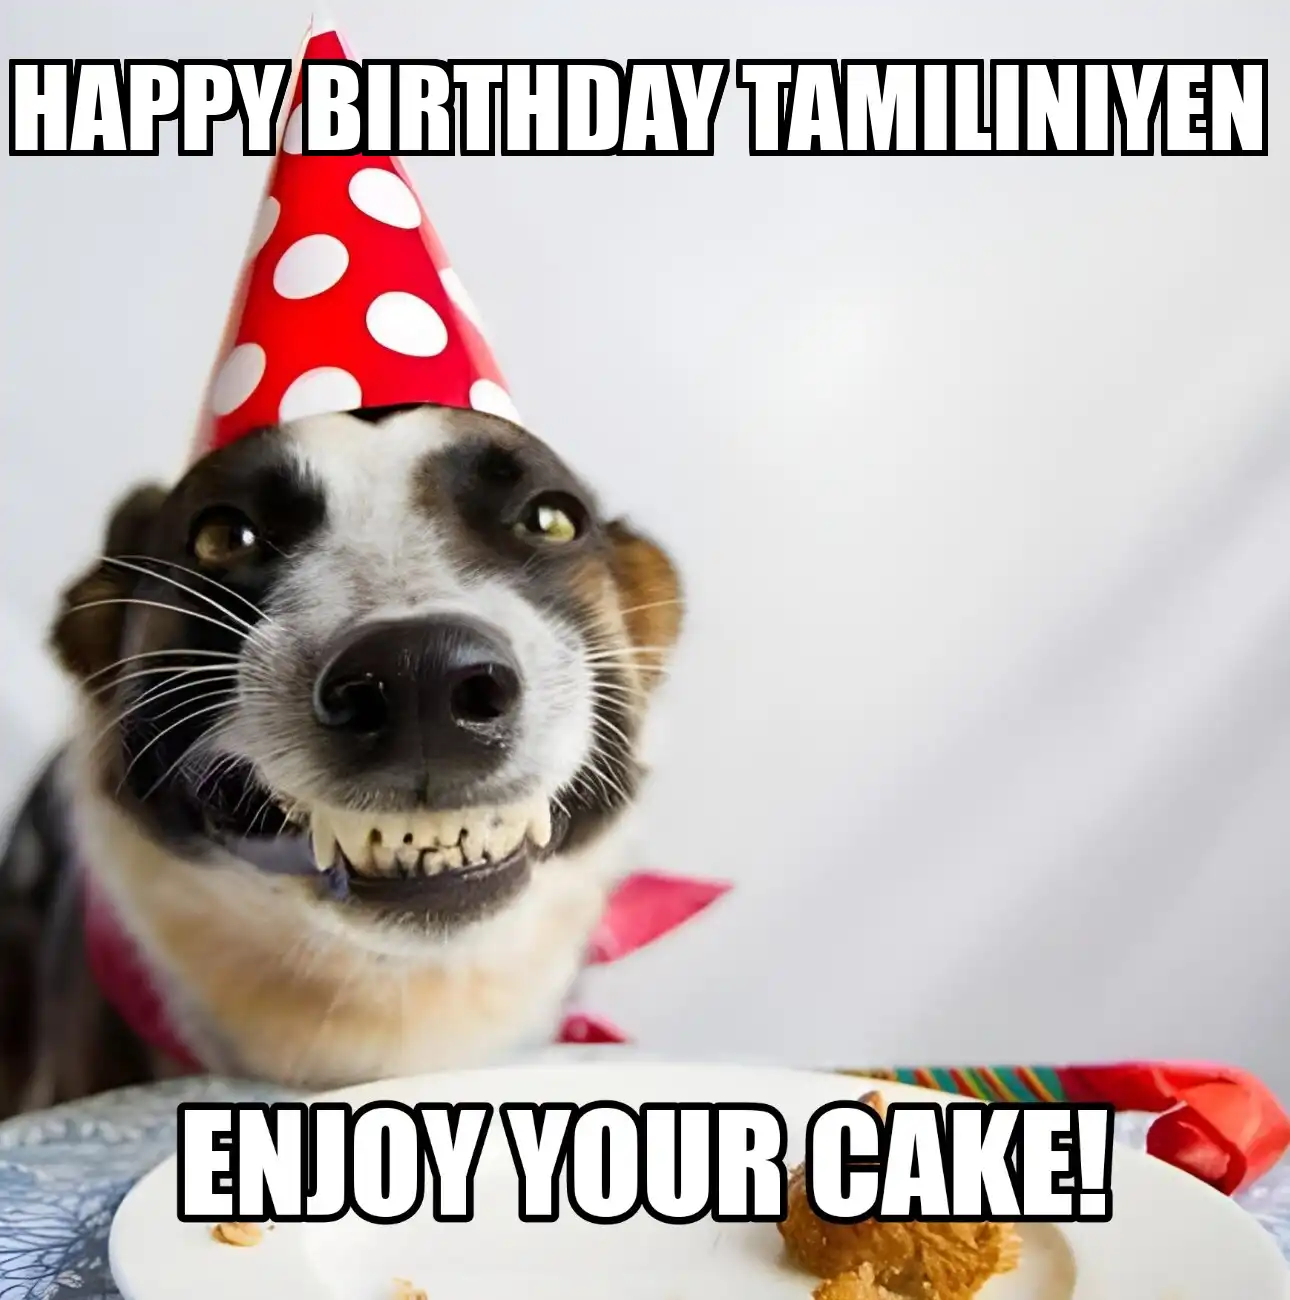 Happy Birthday Tamiliniyen Enjoy Your Cake Dog Meme